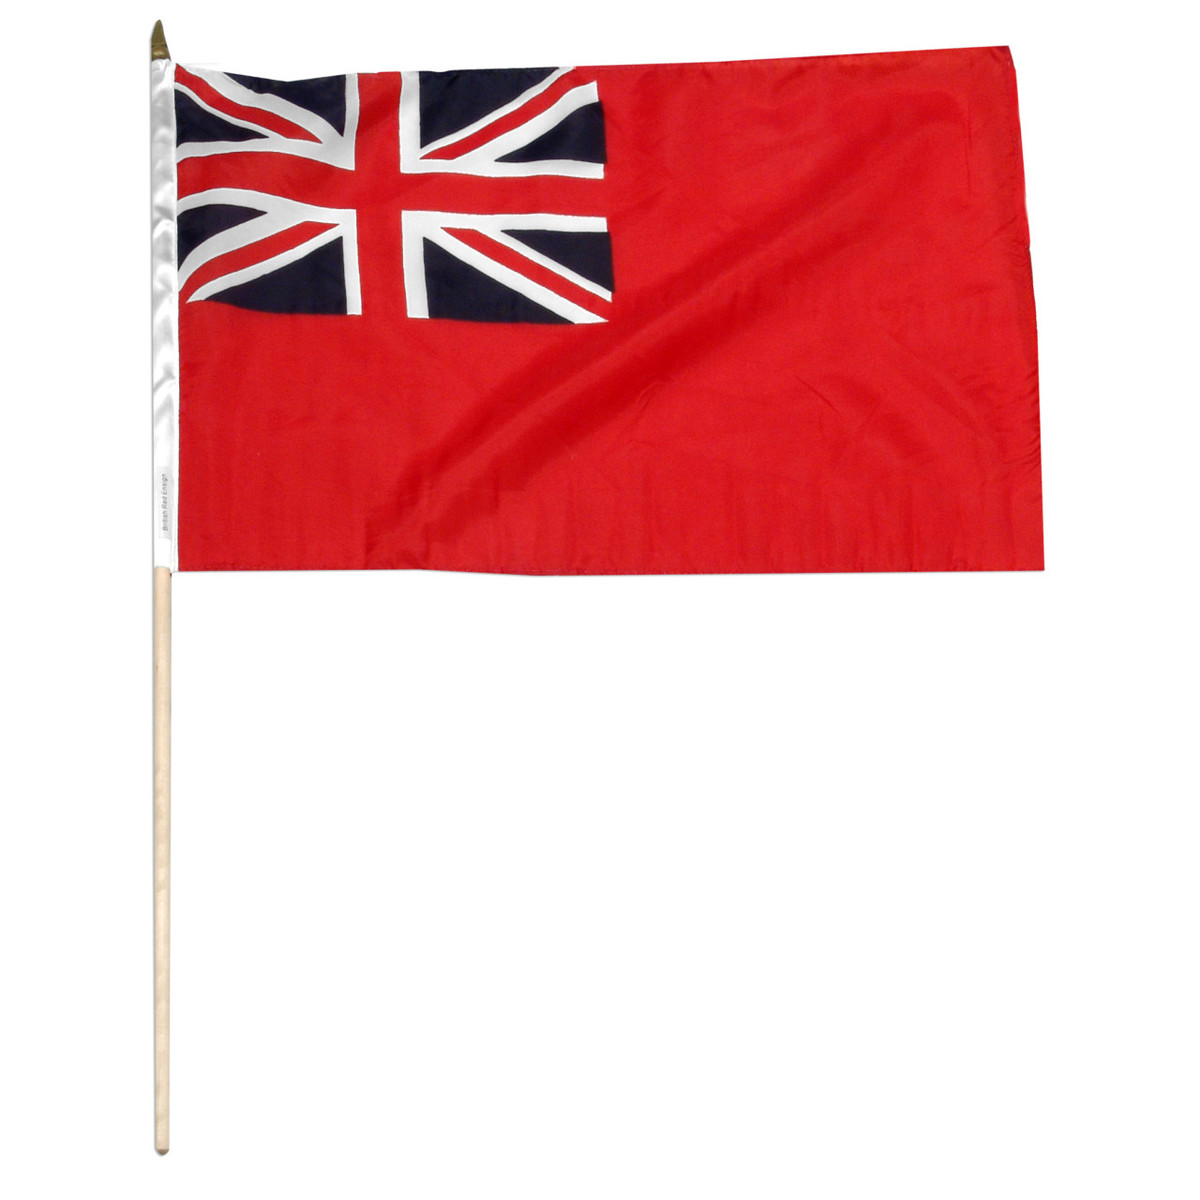 Vær sød at lade være Antagonisme fængsel British Red Ensign 12in x 18in Flag